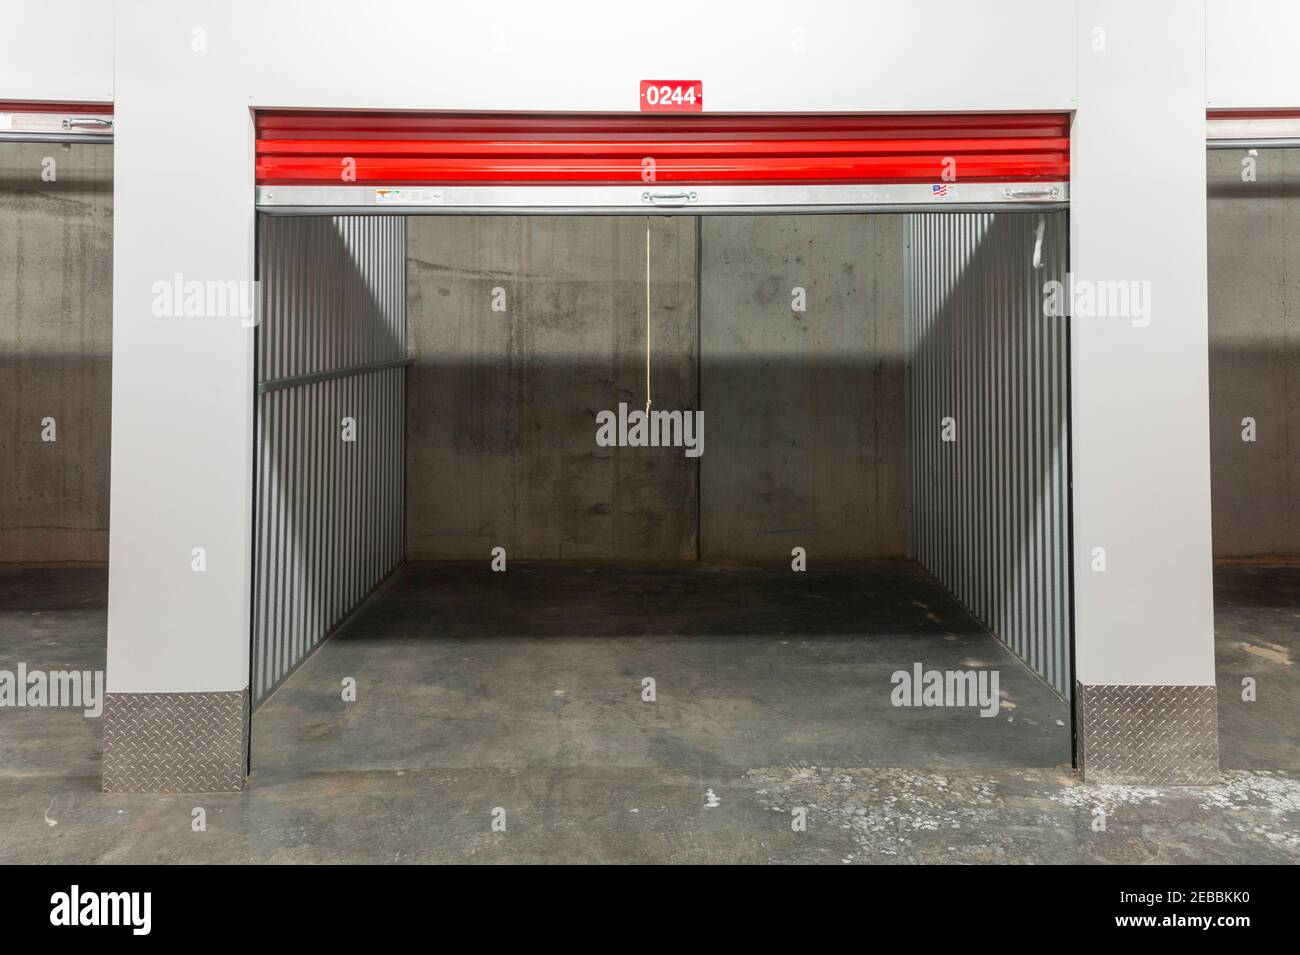 Vider l'intérieur de l'espace de rangement libre-service avec les portes rouges Banque D'Images